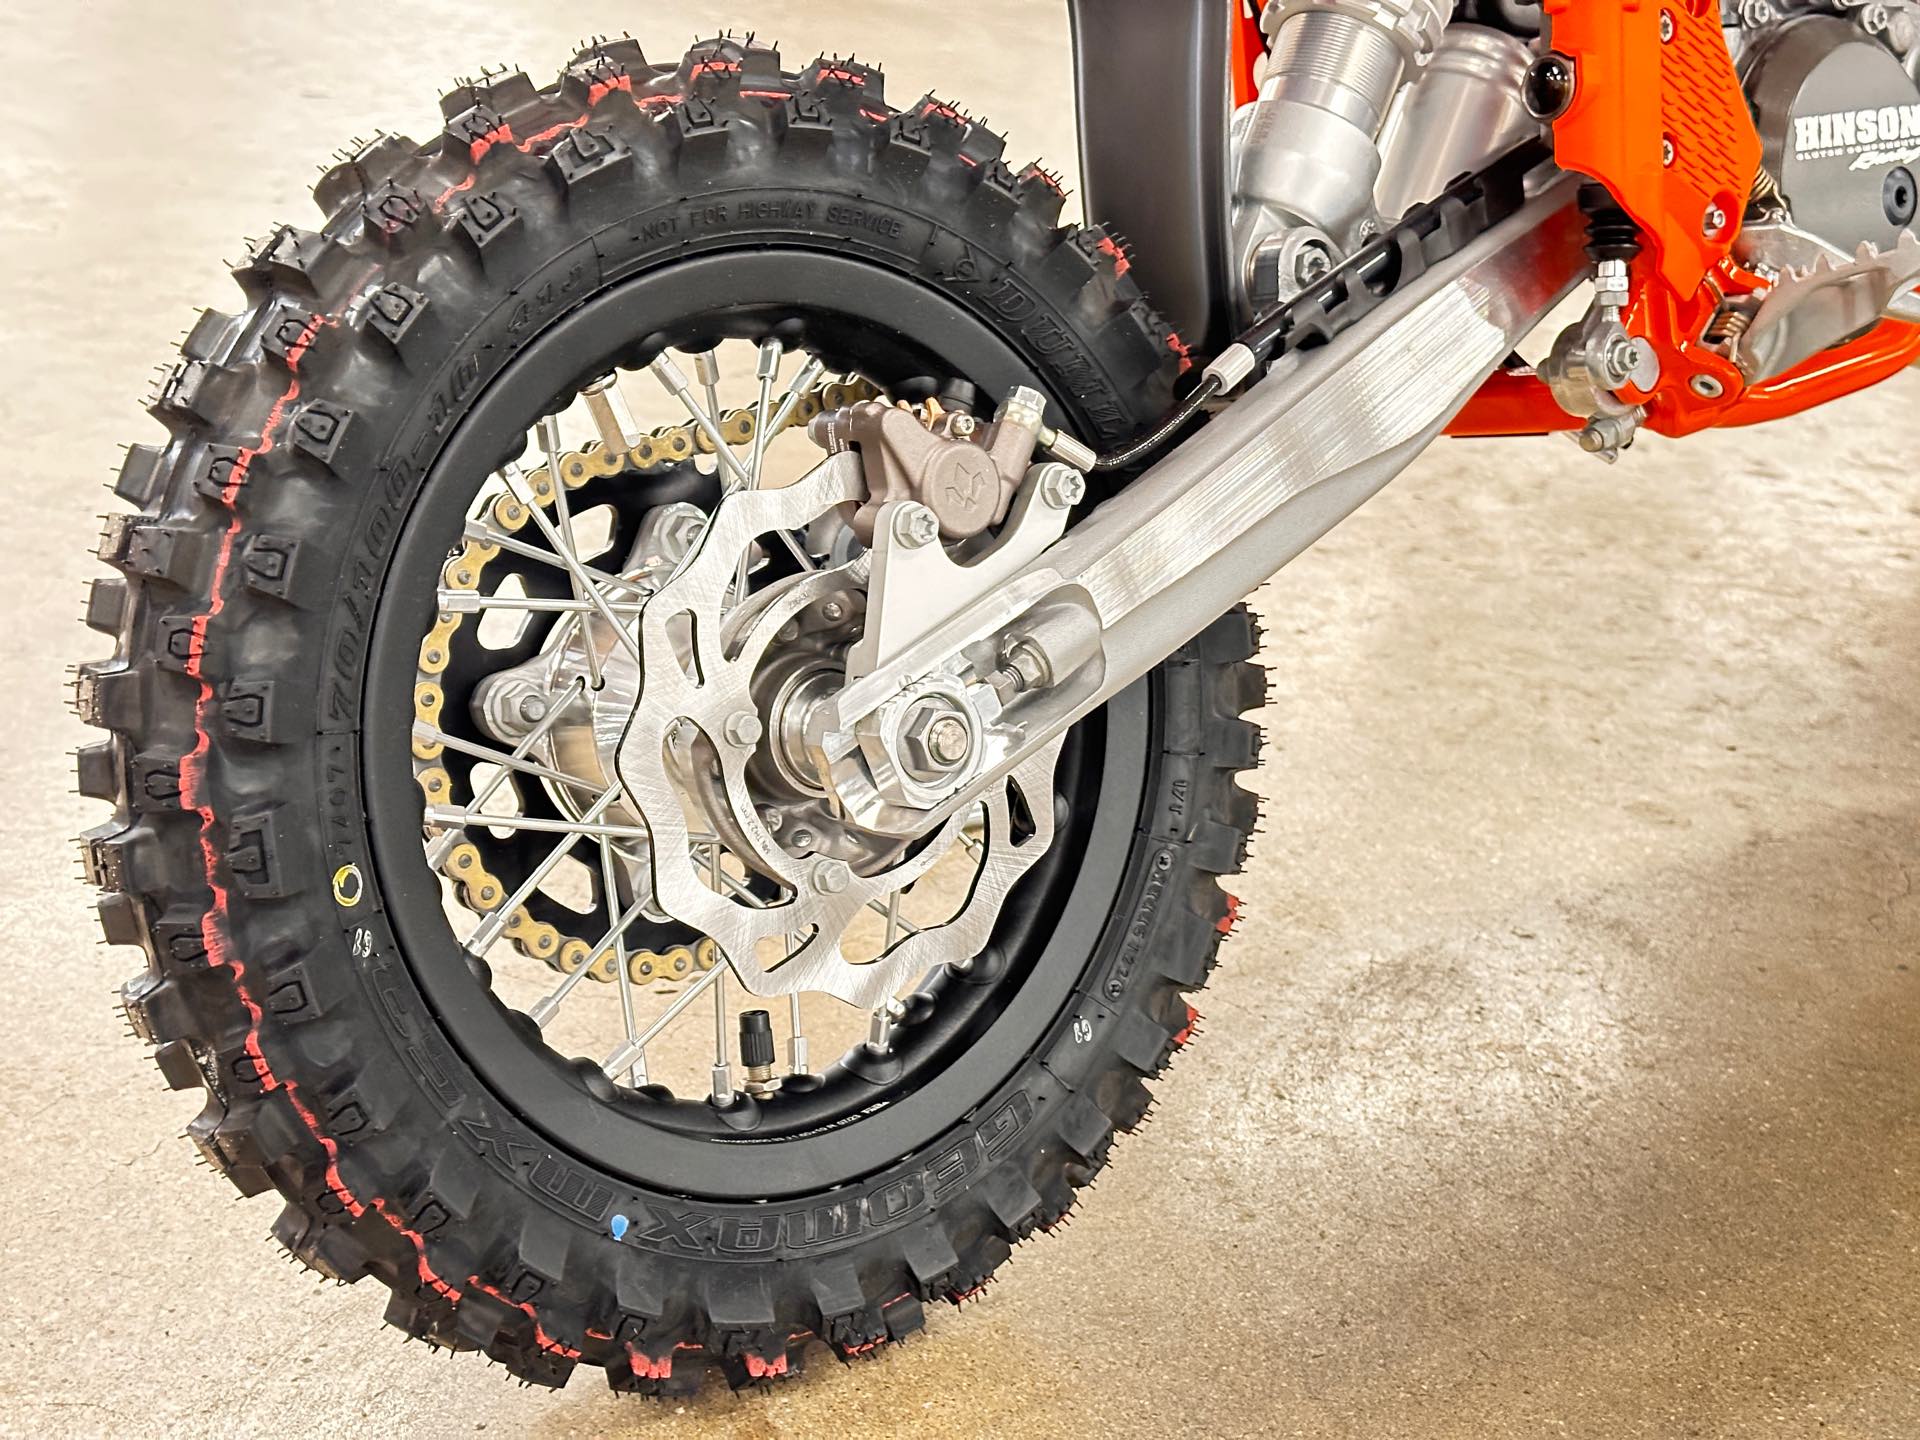 KTM 450 EXC RACING Motorcycle tires- myNETmoto